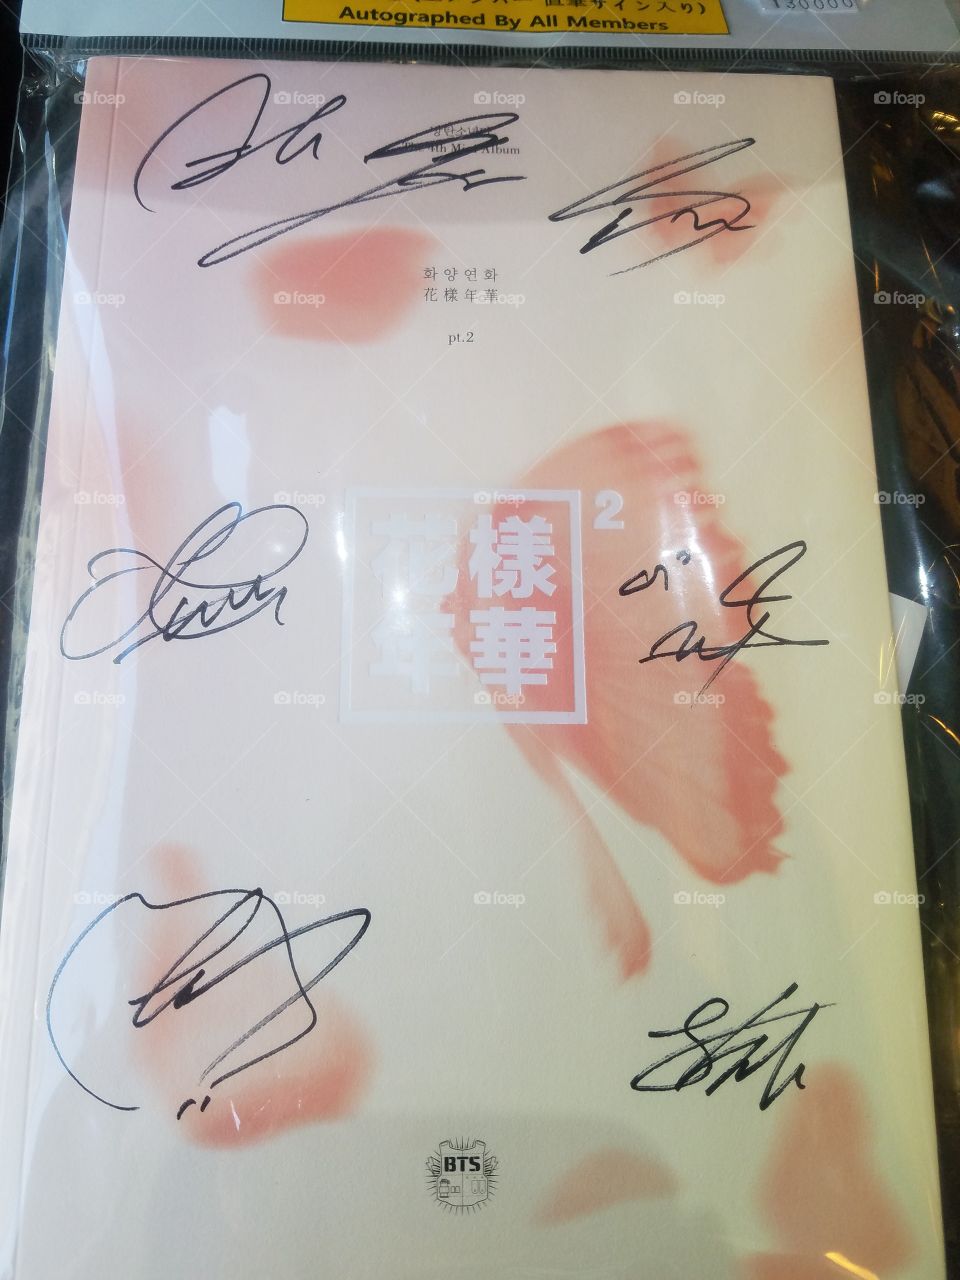 Signed BTS album